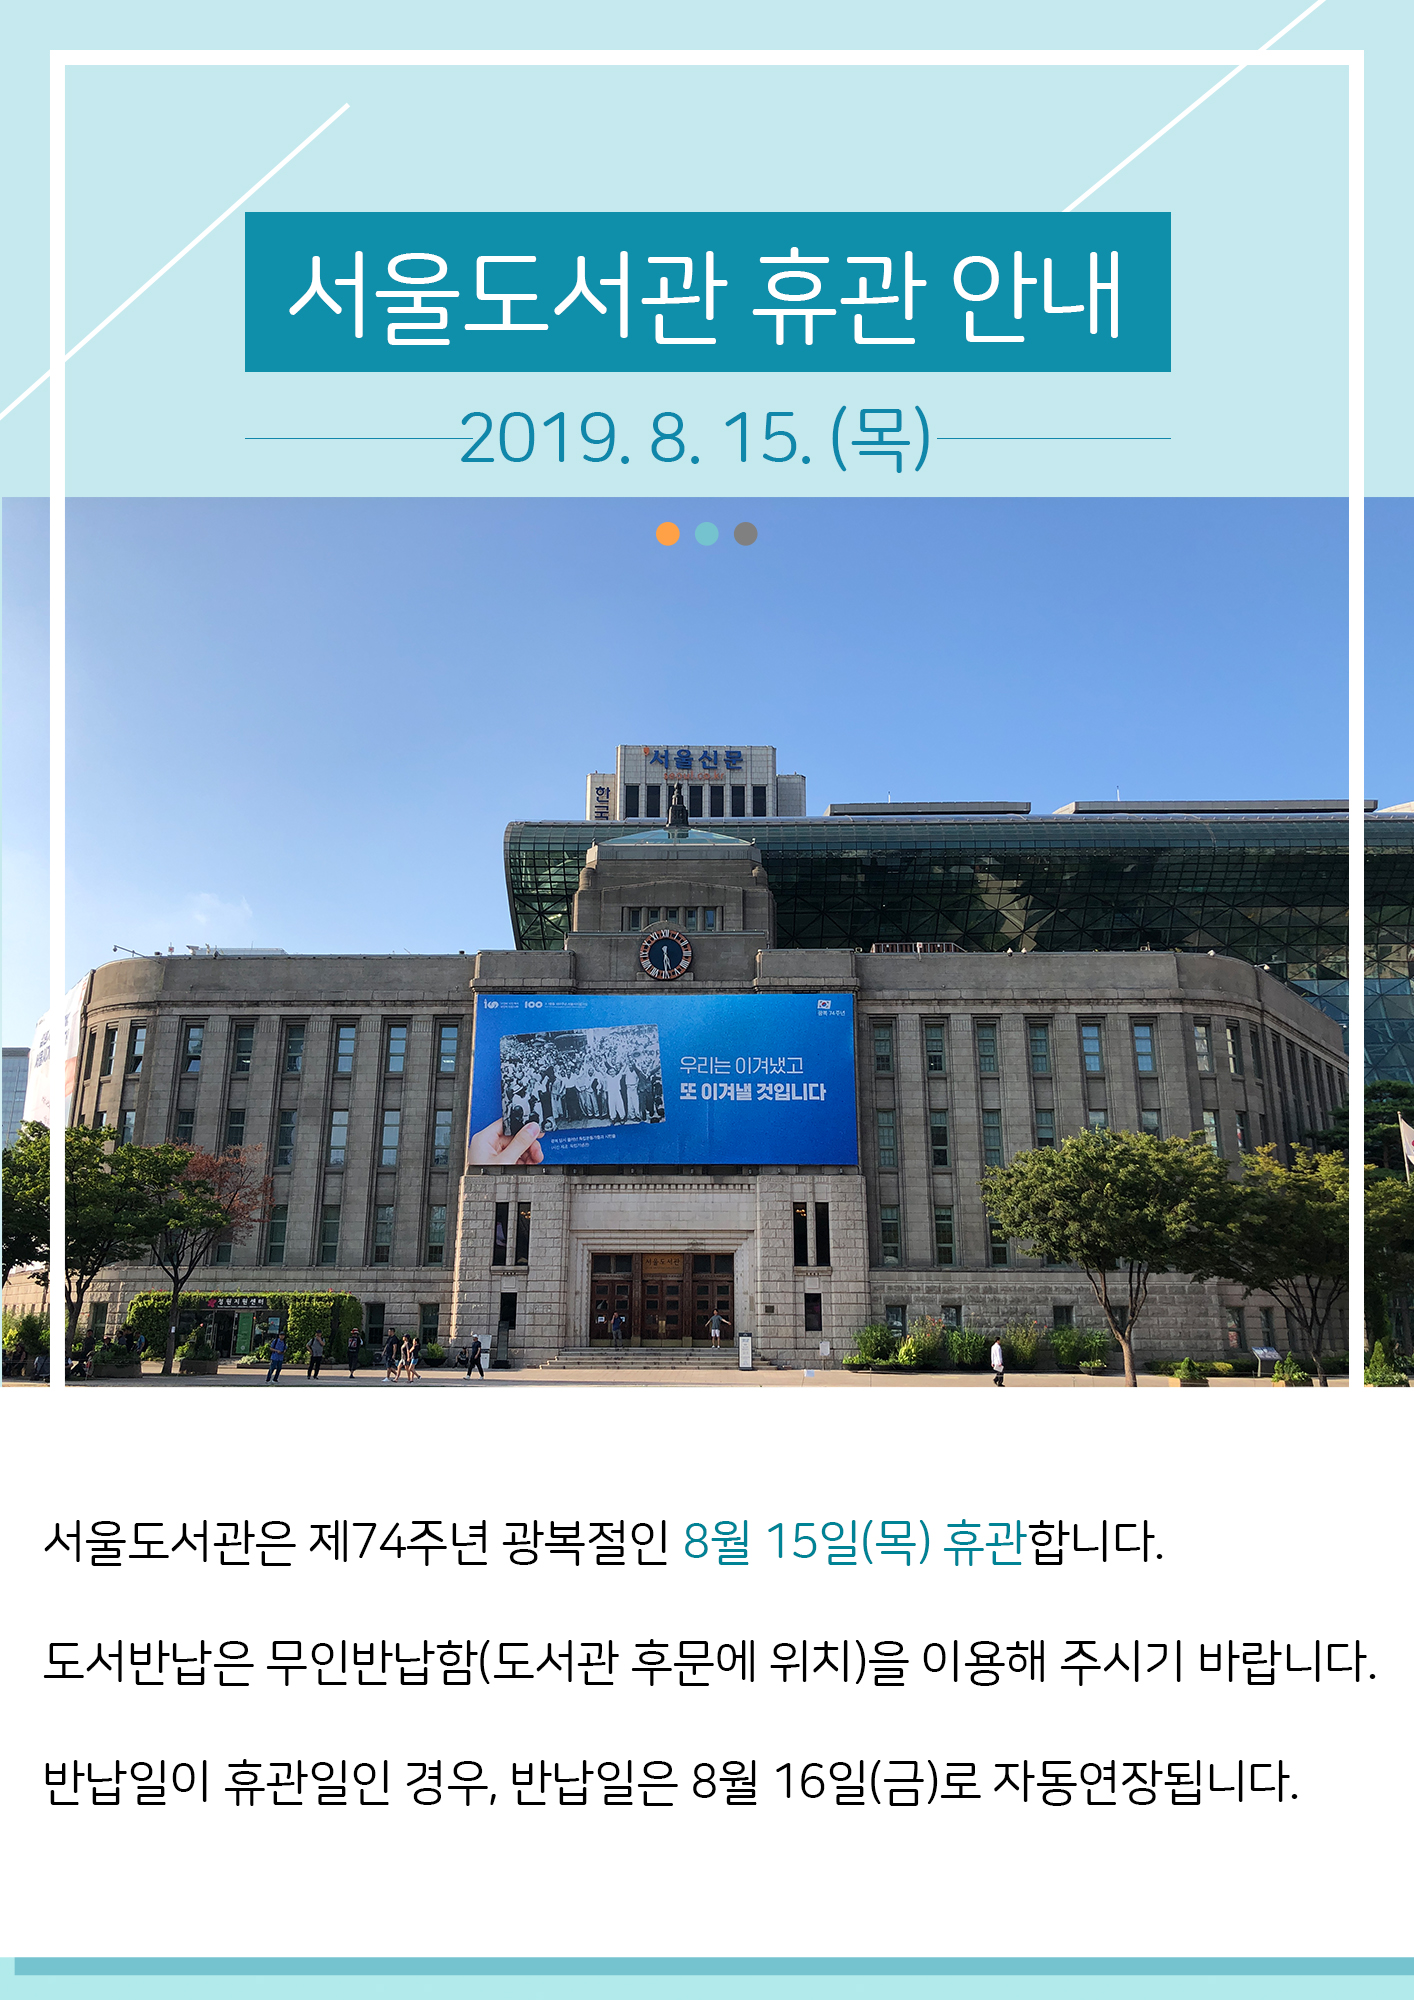 서울도서관 광복절(8월15일) 휴관 안내  포스터